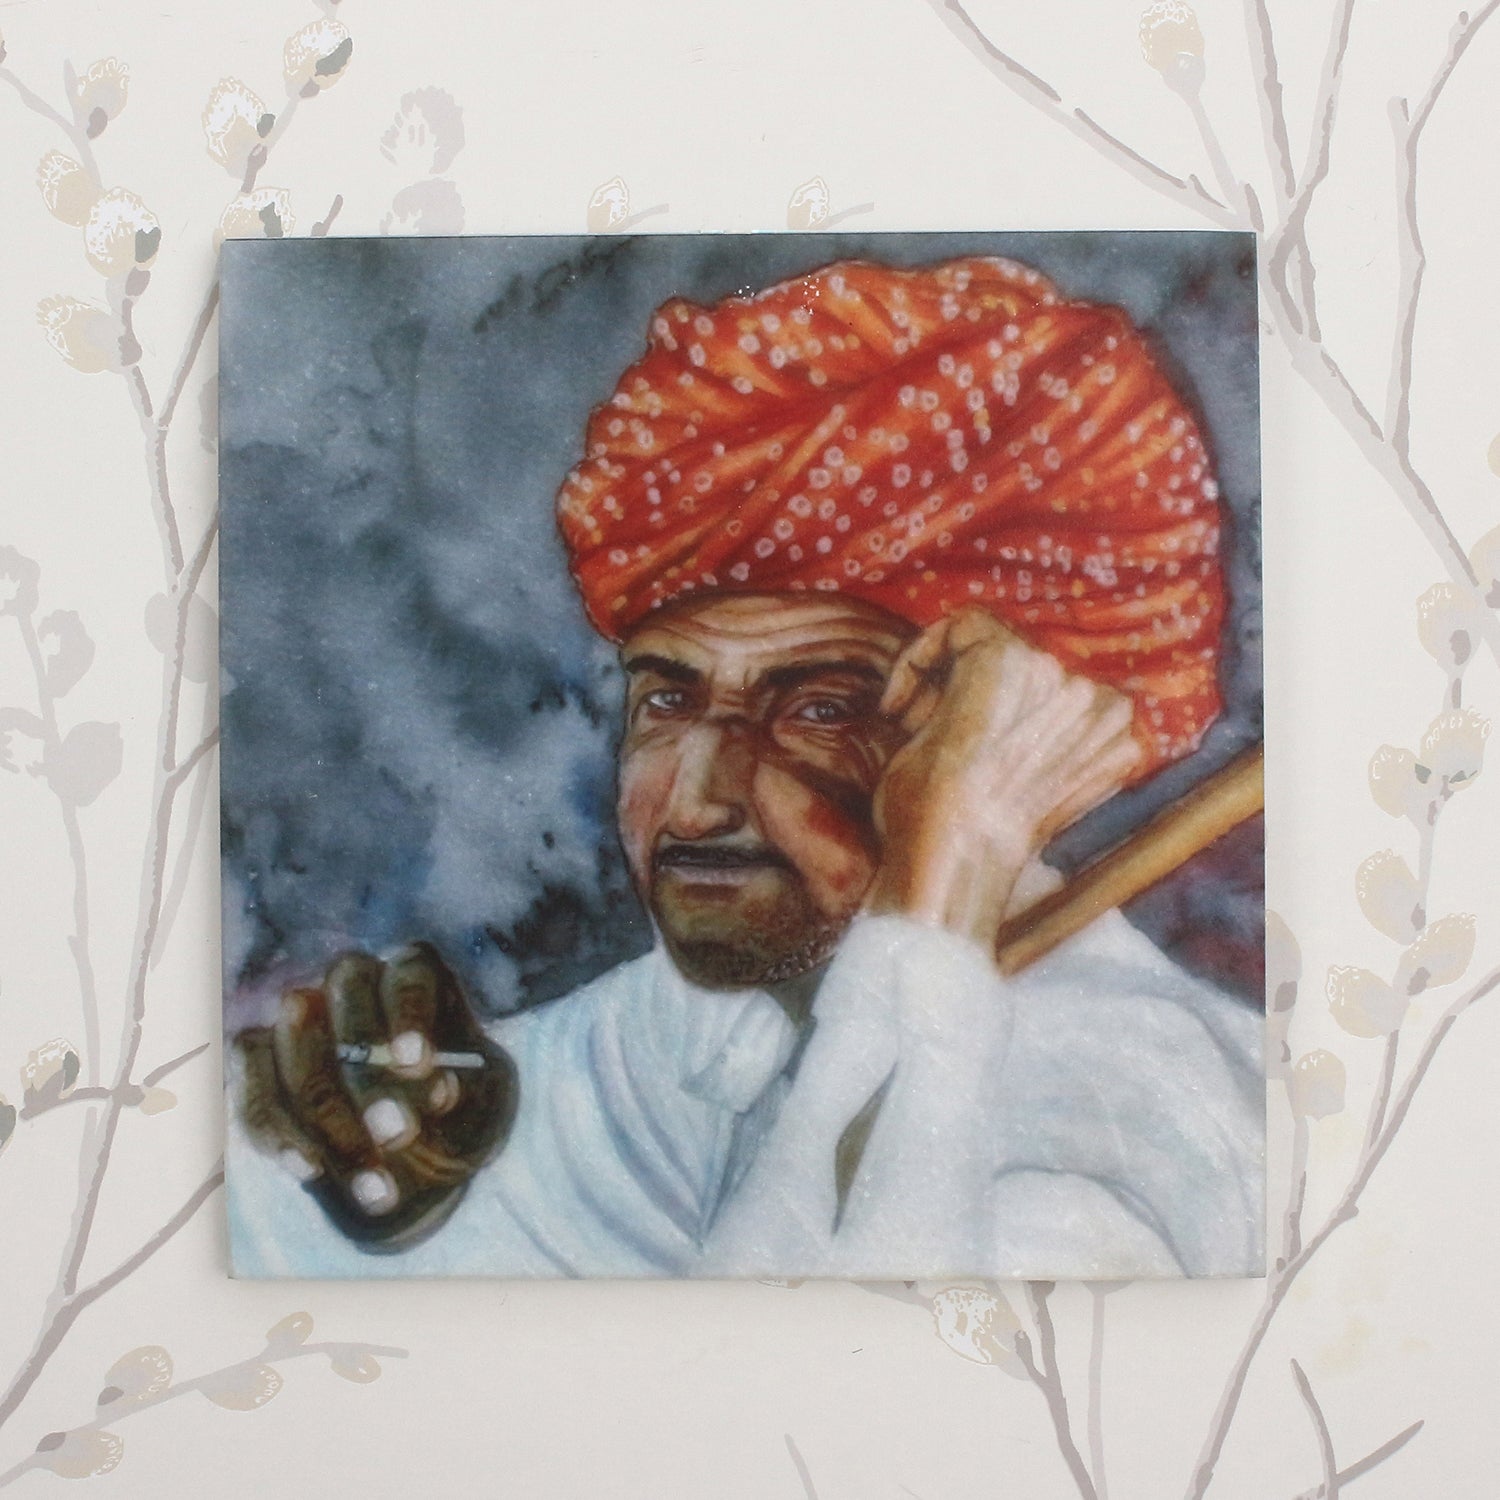 Rajasthani Man Wearing Turban Painting On Marble Square Tile